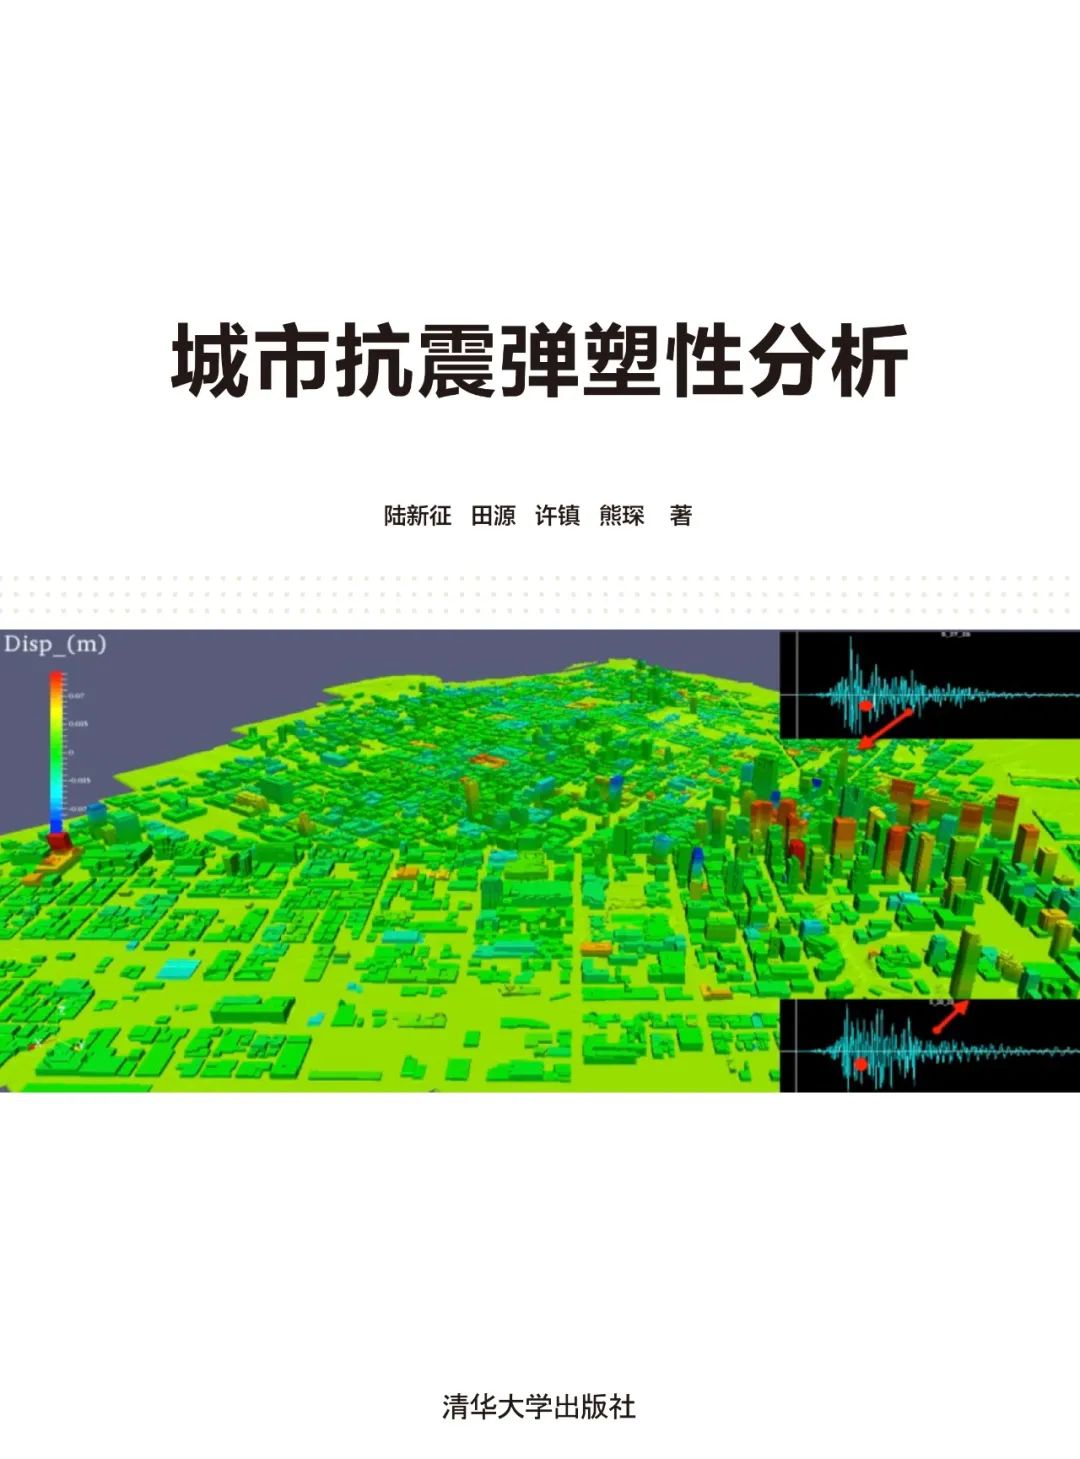 专著《城市抗震弹塑性分析》出版